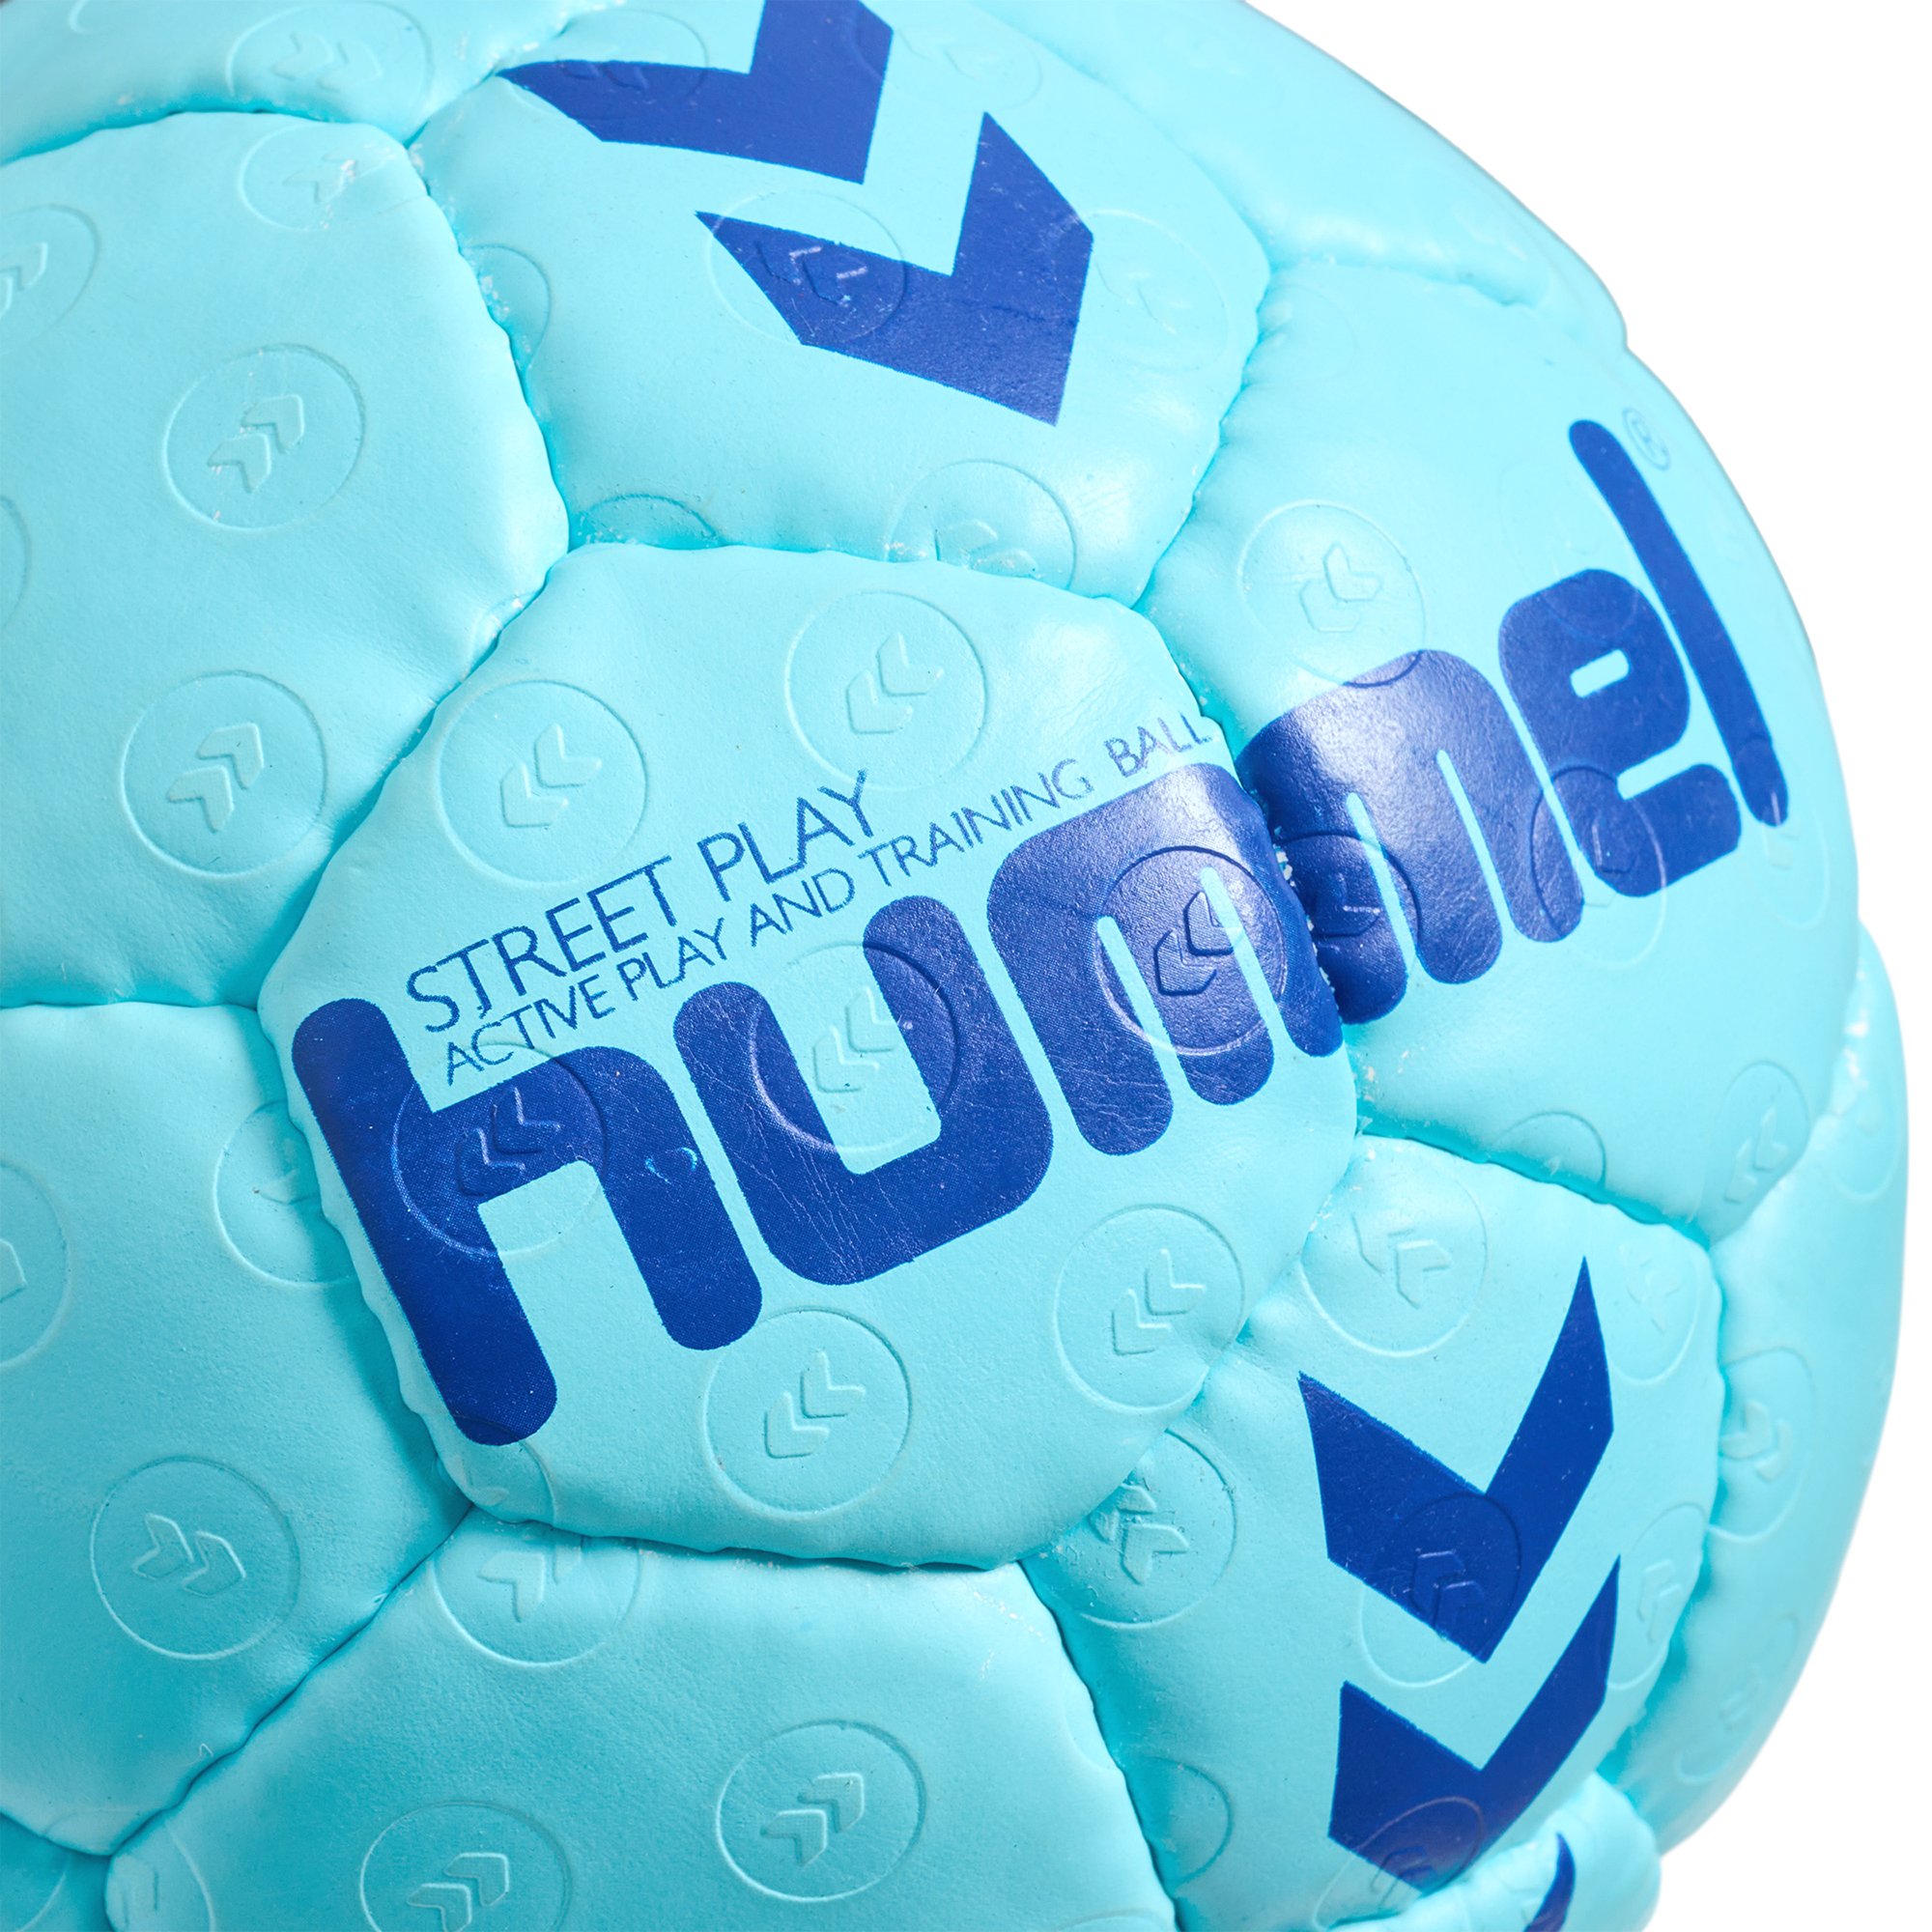 Play Handbälle - Street Hummel Handball